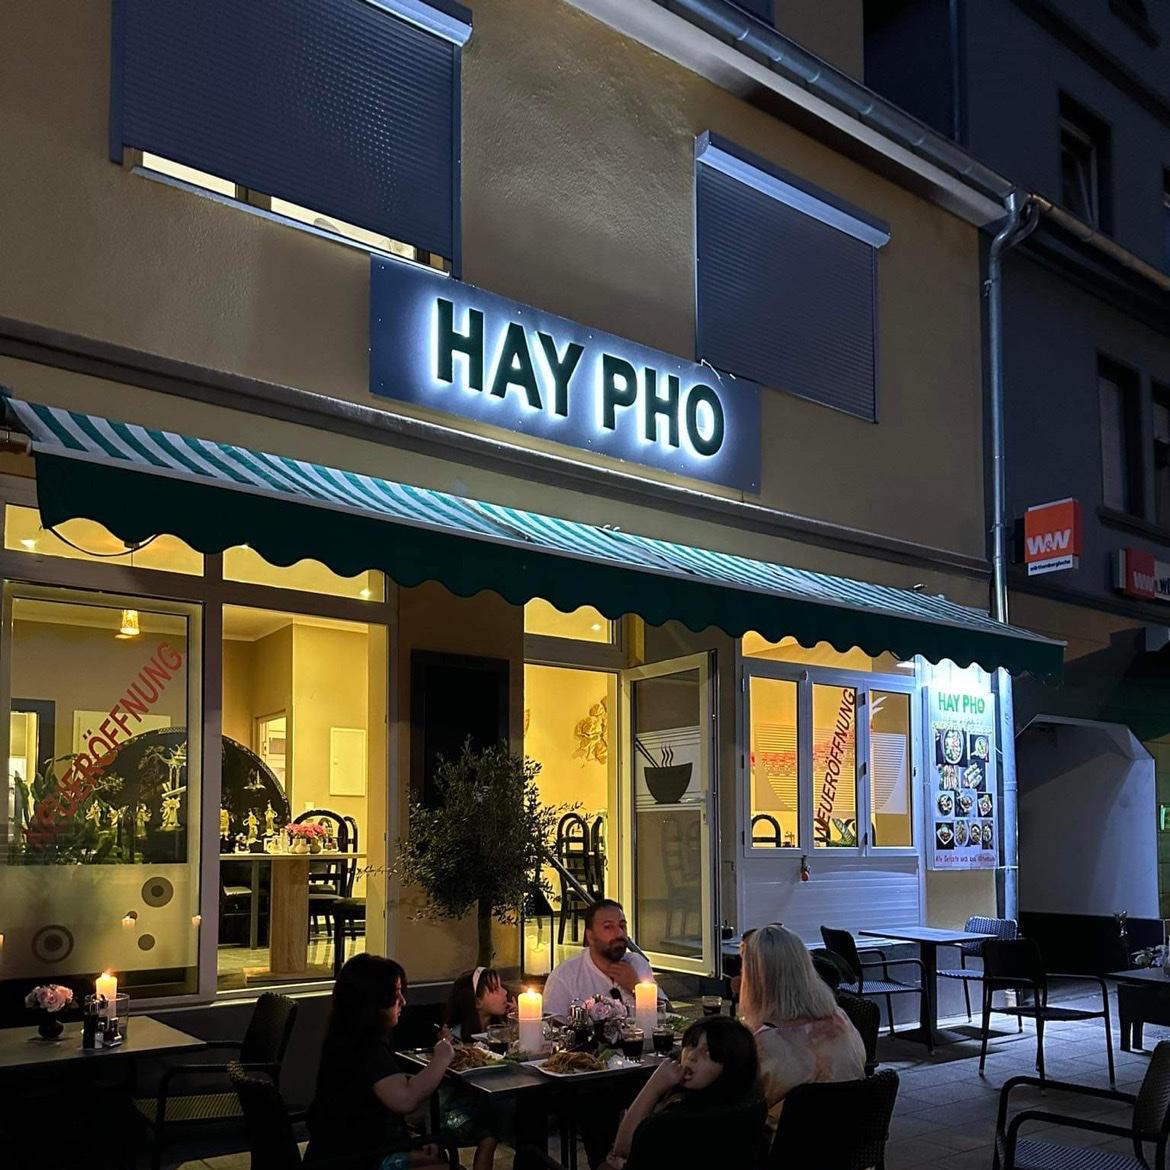 Restaurant "HAY PHO" in Wadgassen